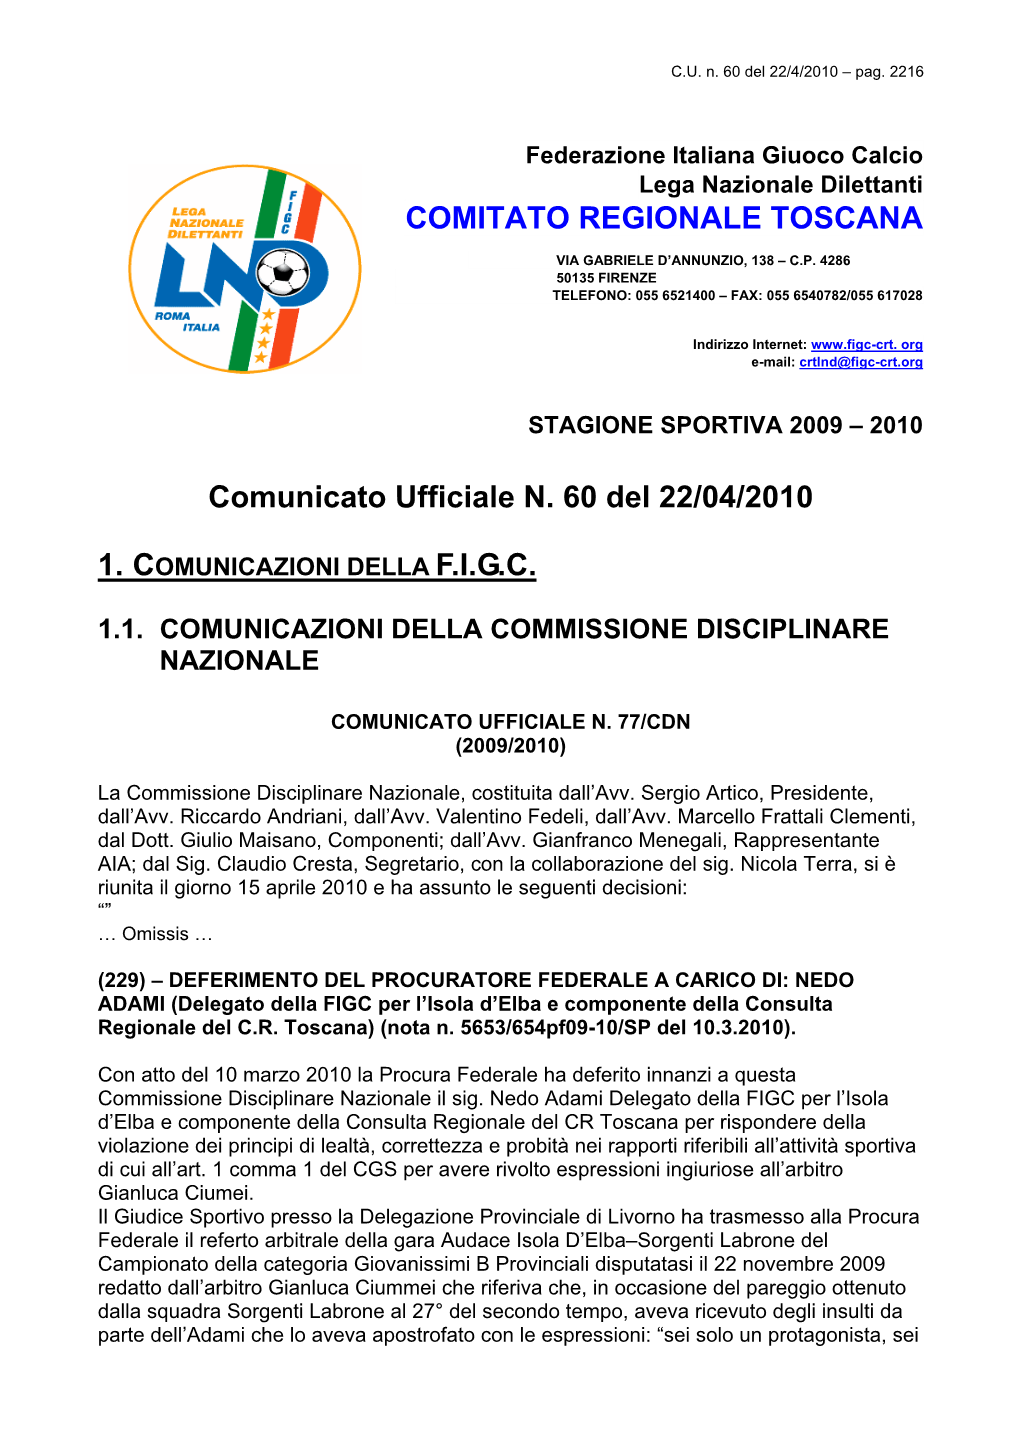 Comunicato Ufficiale N. 60 Del 22/04/2010 COMITATO REGIONALE TOSCANA